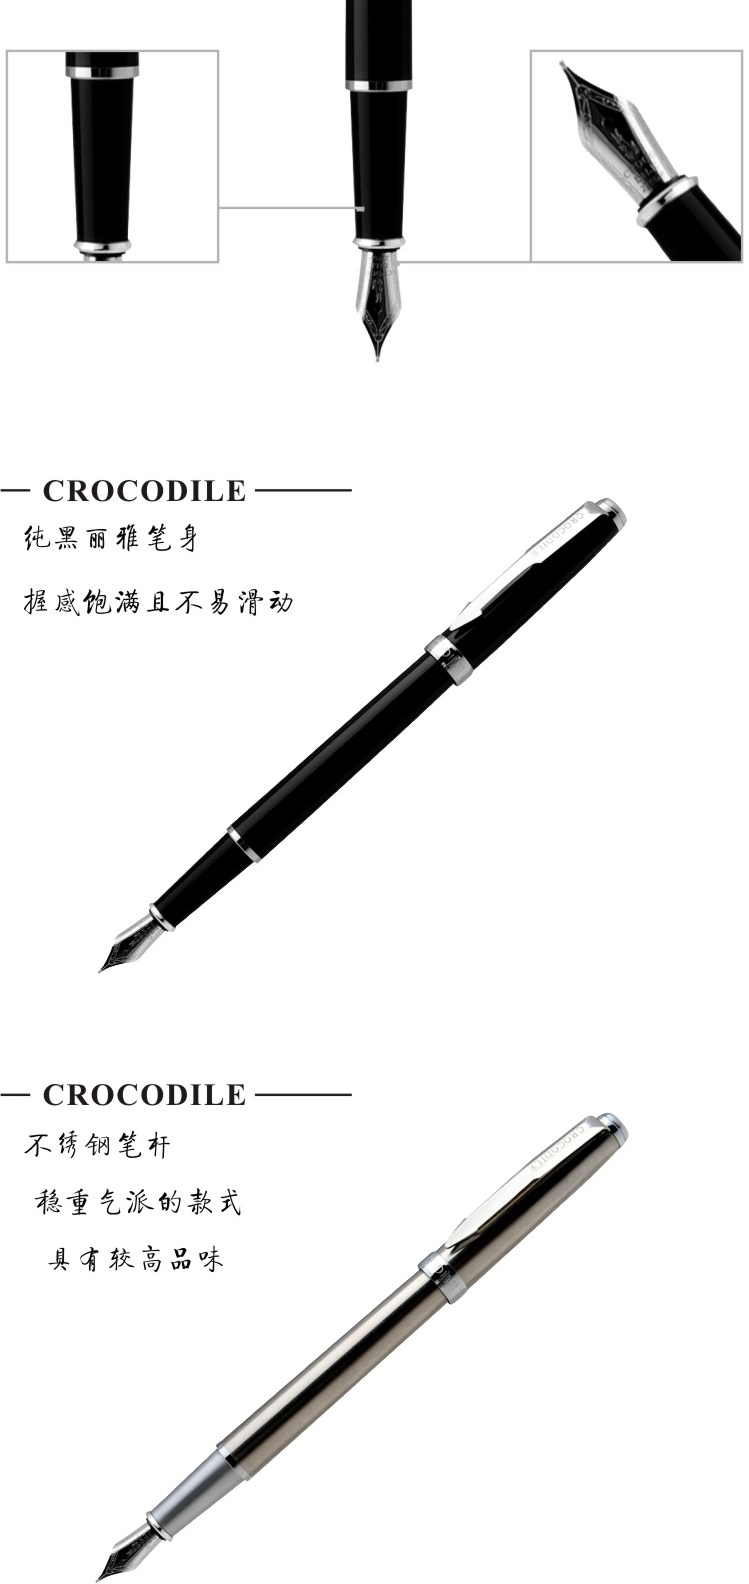 Original original crocodile 268 classic simple series pen silver clip ink pen alligator pen metal pen3